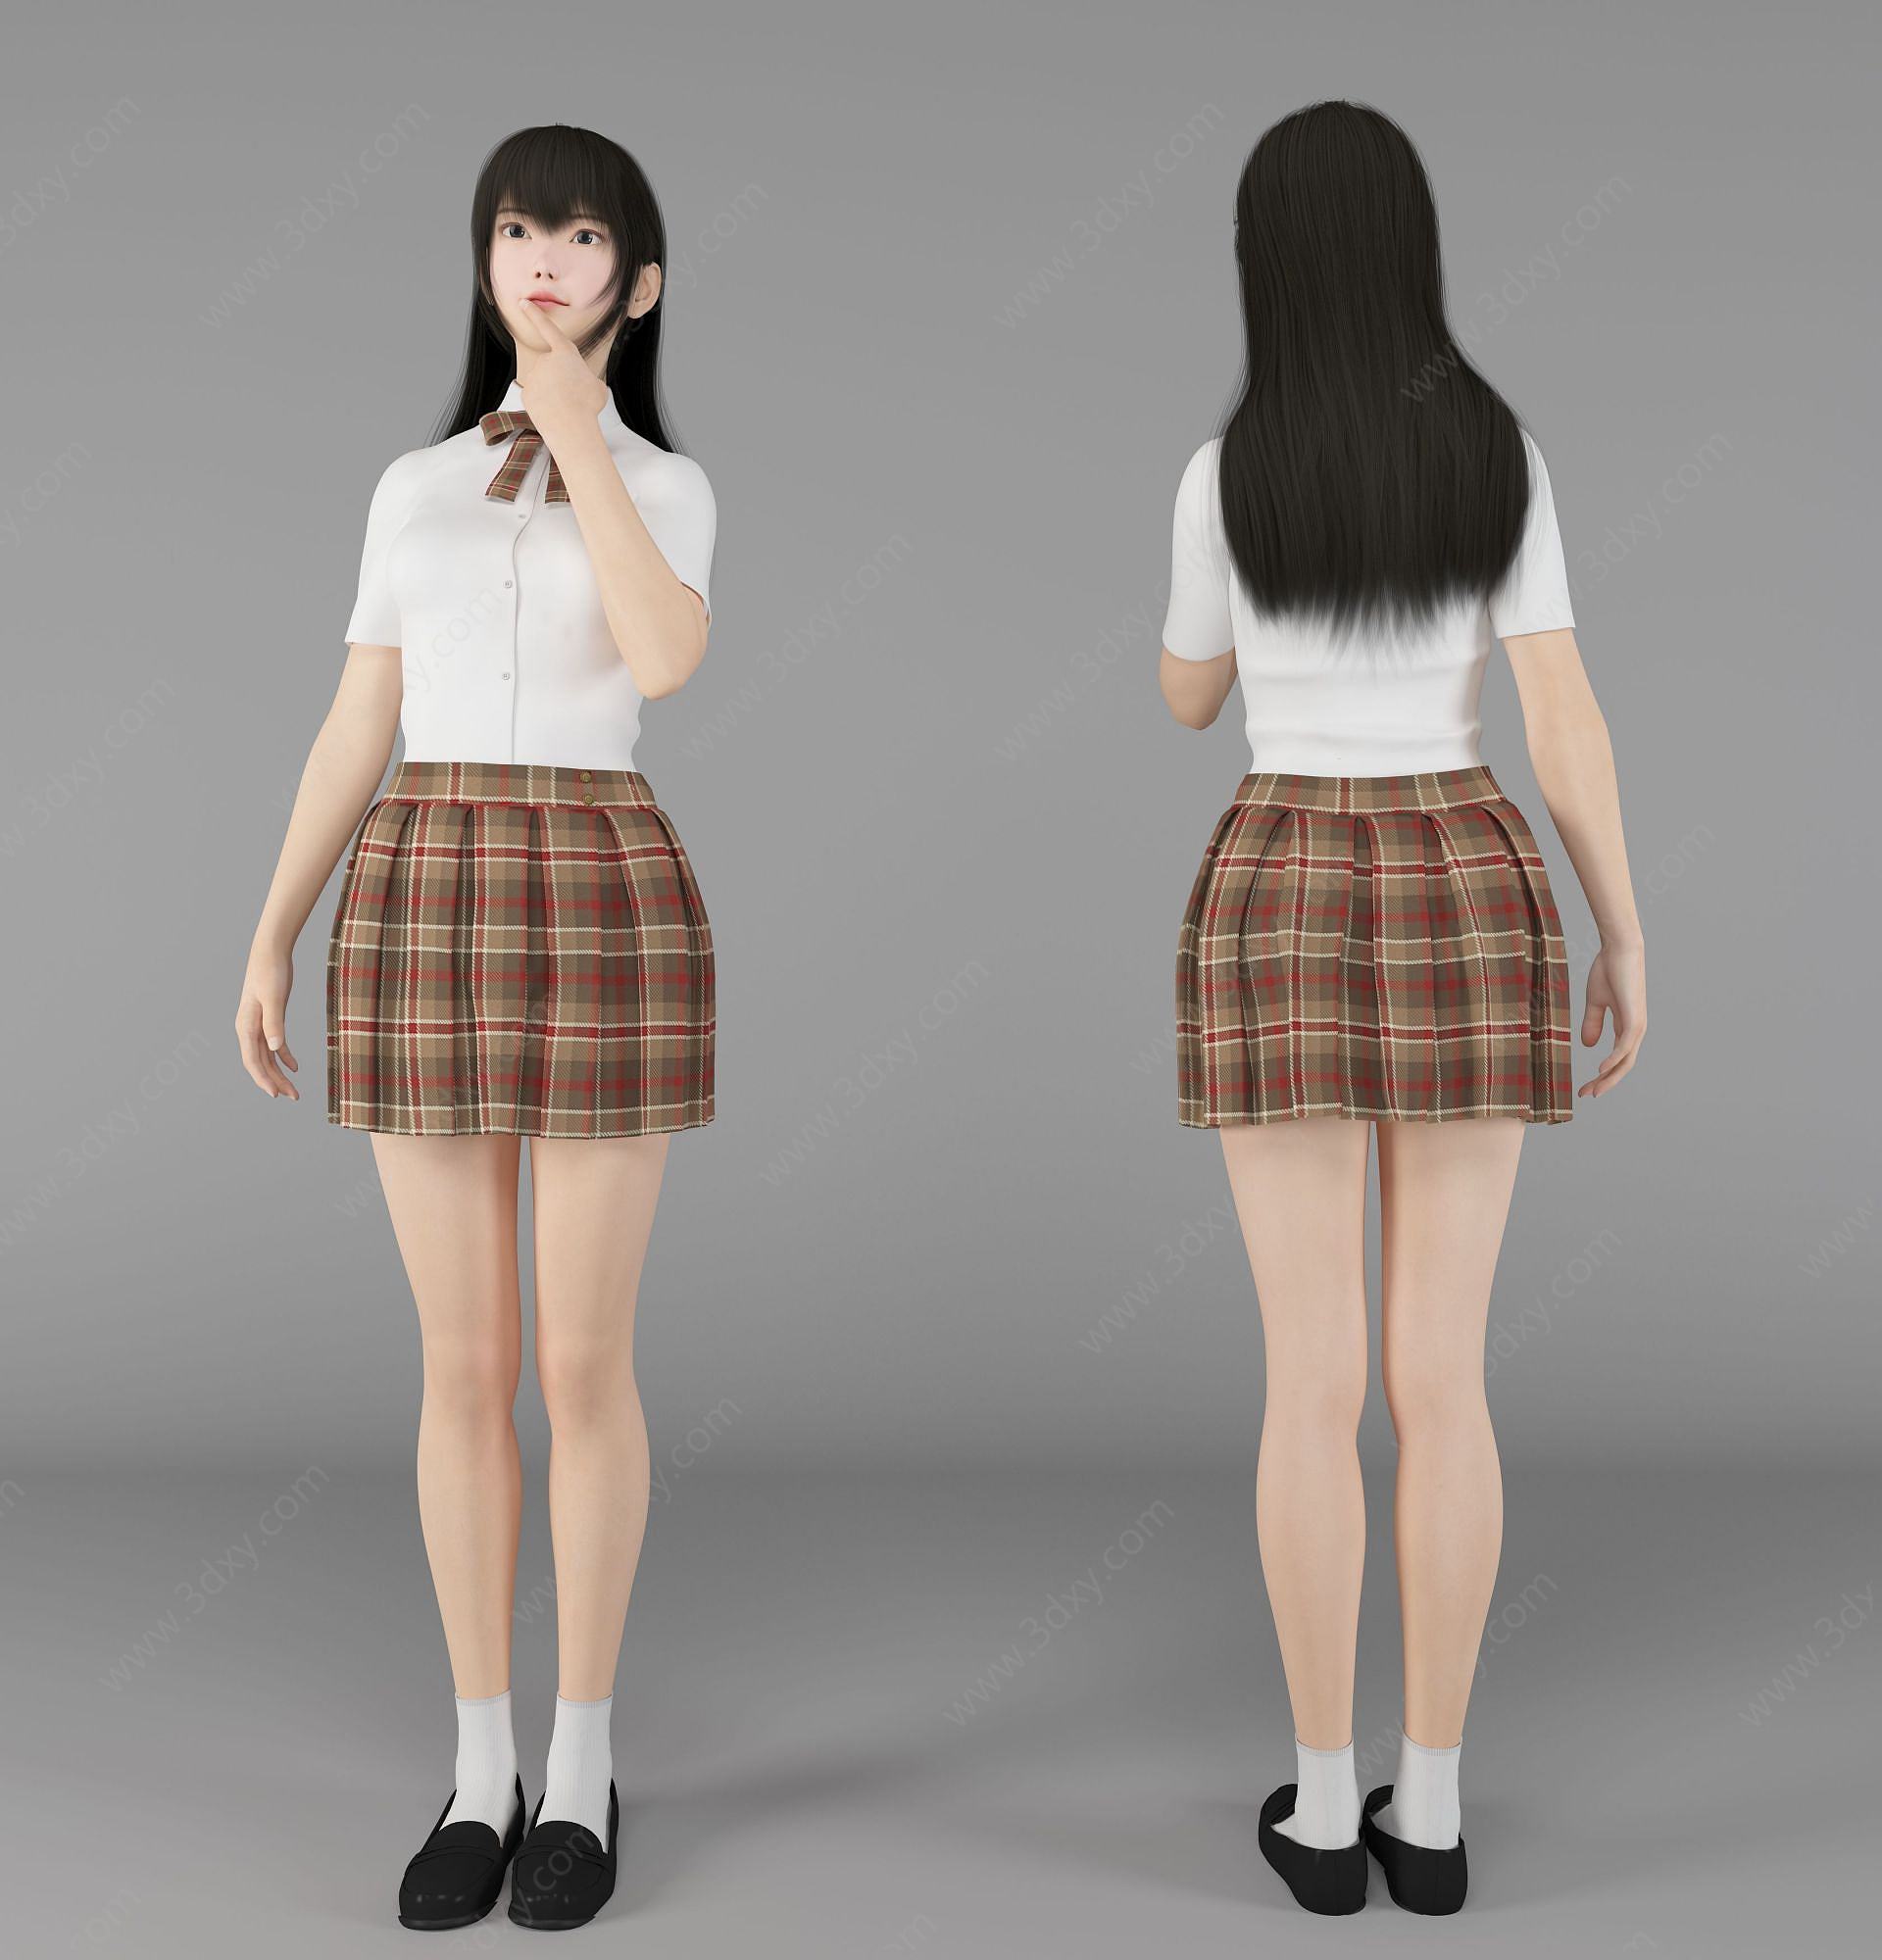 现代风格jk制服美女人物3D模型